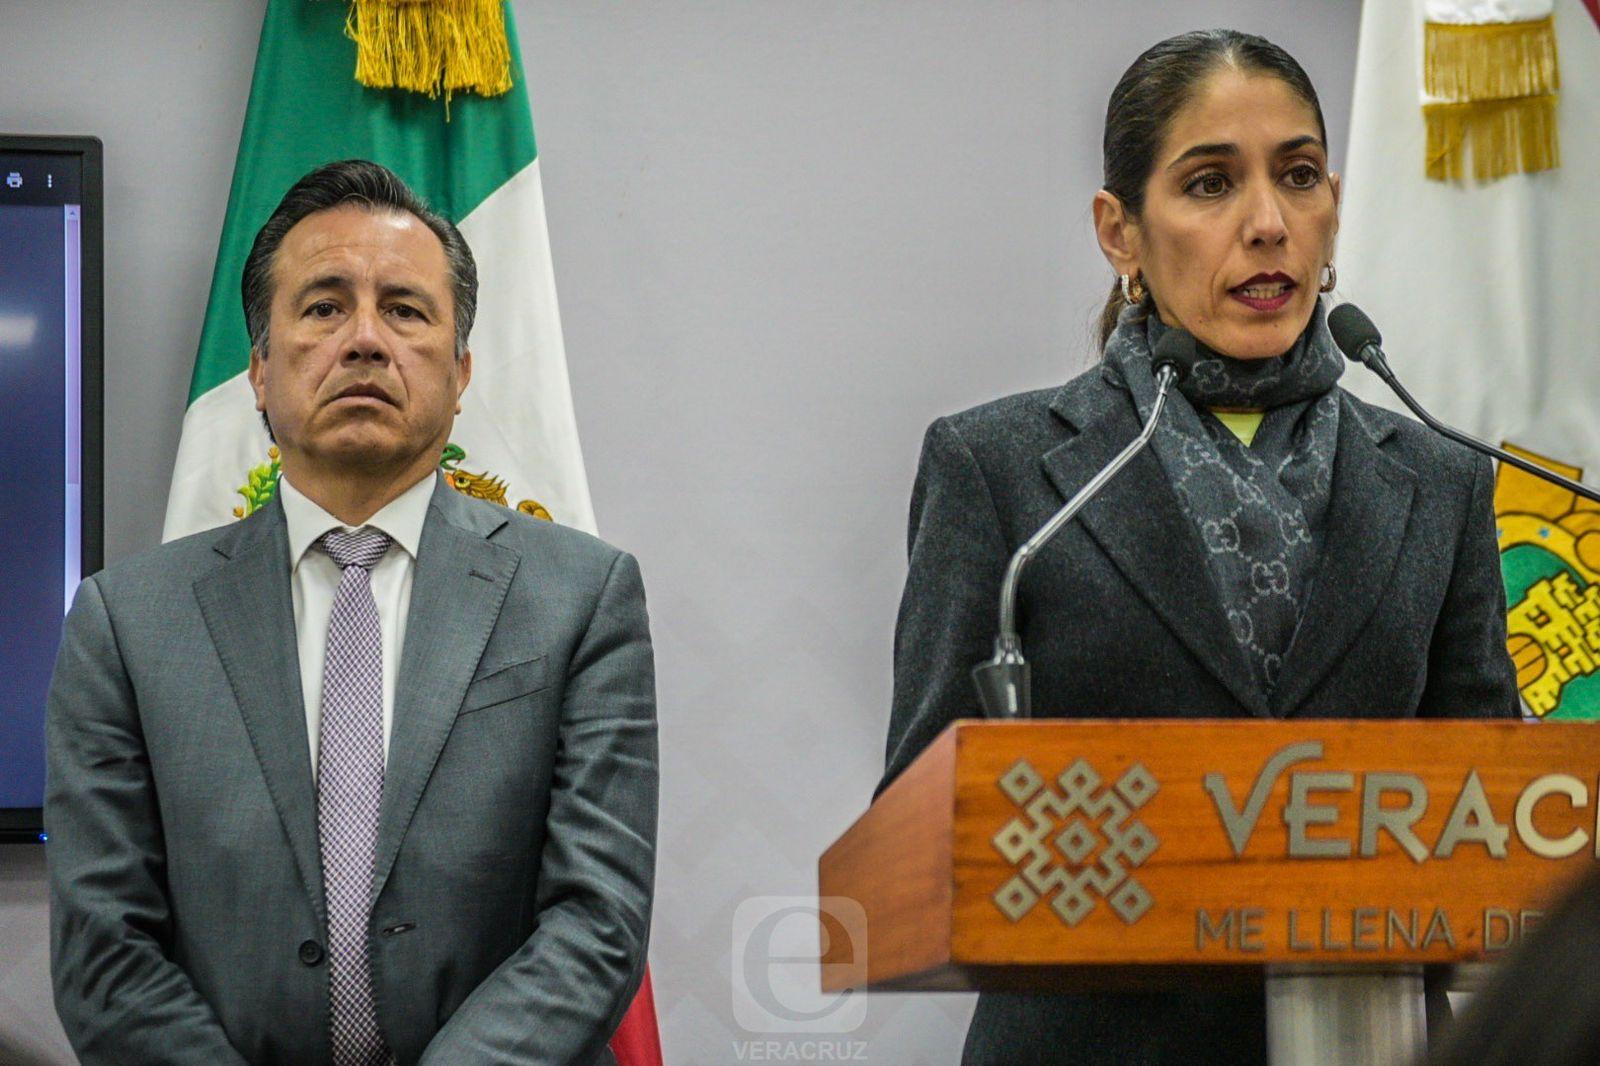 Confirma Fiscal de Veracruz 7 detenidos por balaceras en Medellín de Bravo